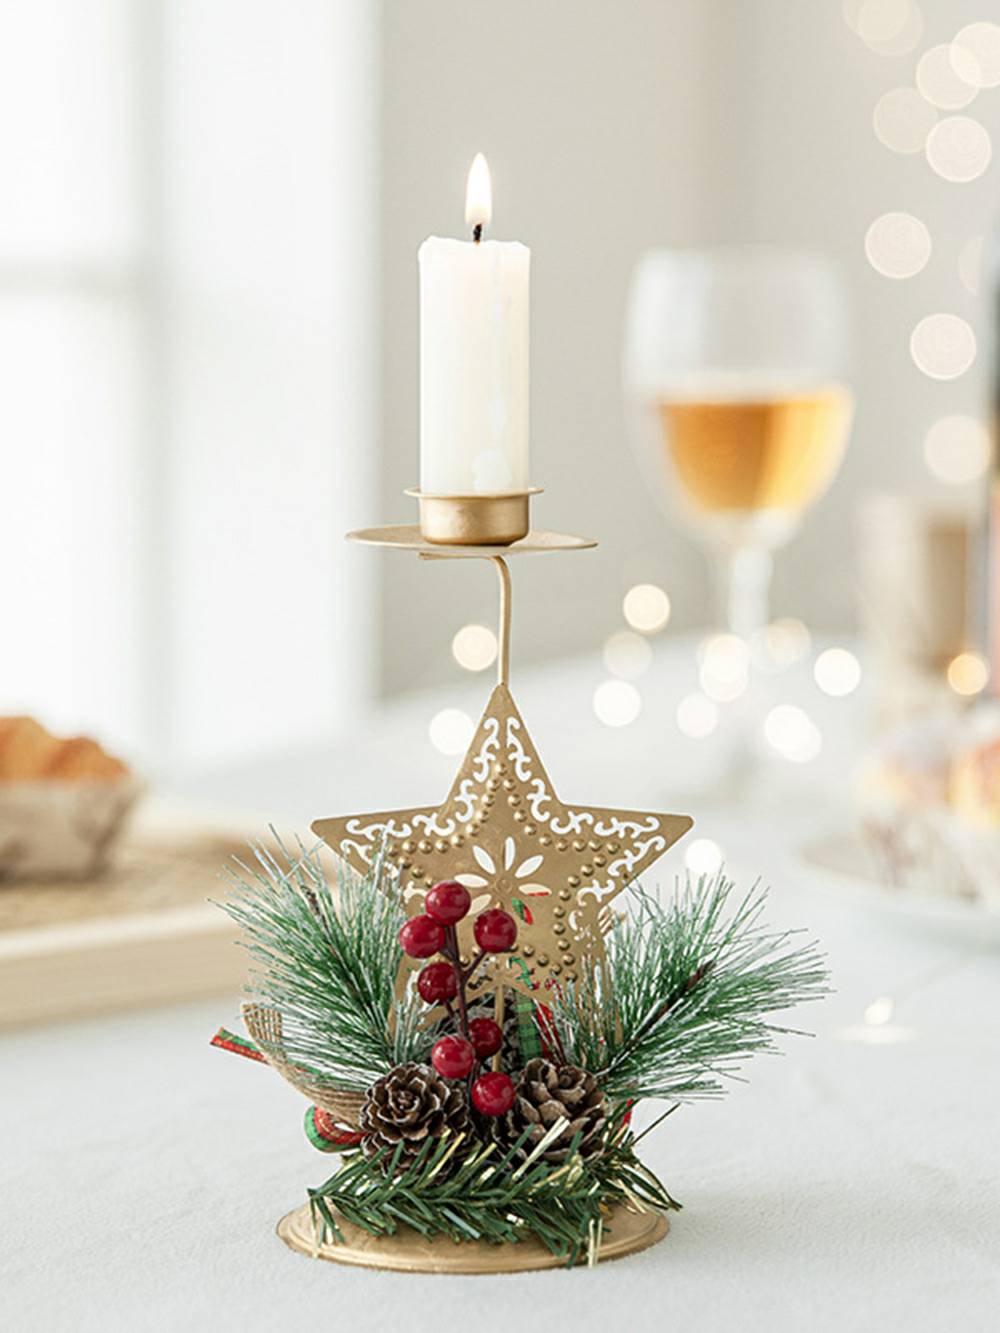 Weihnachtlich goldener Kerzenhalter aus Eisen – festlicher Deko-Akzent